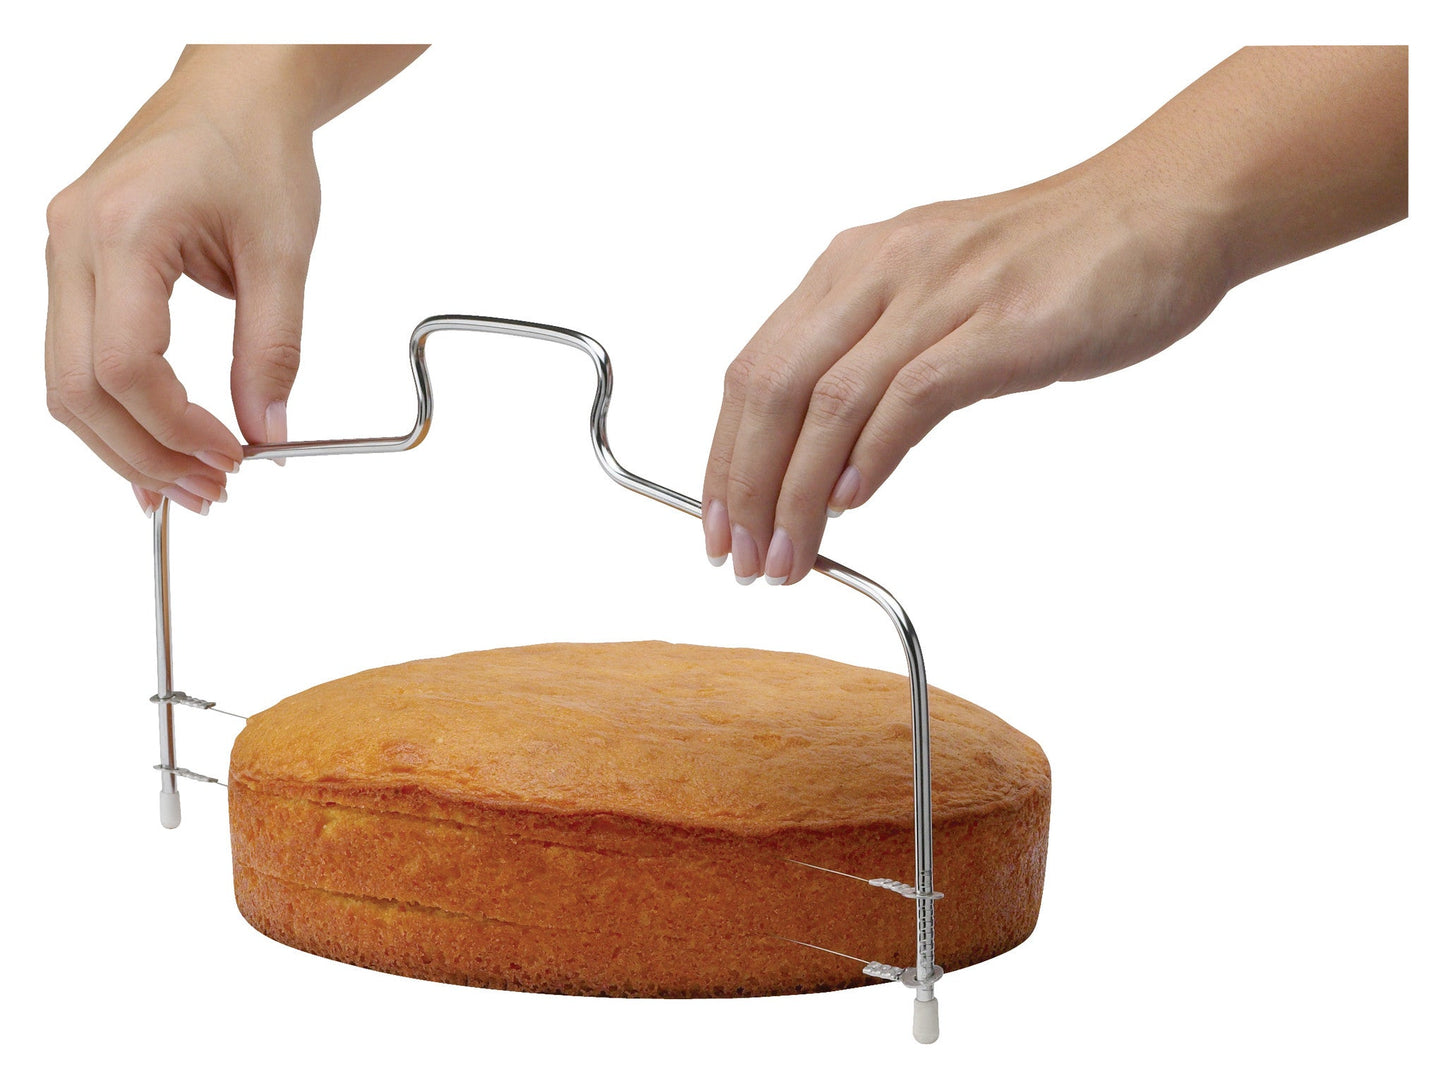 Cake Cutter